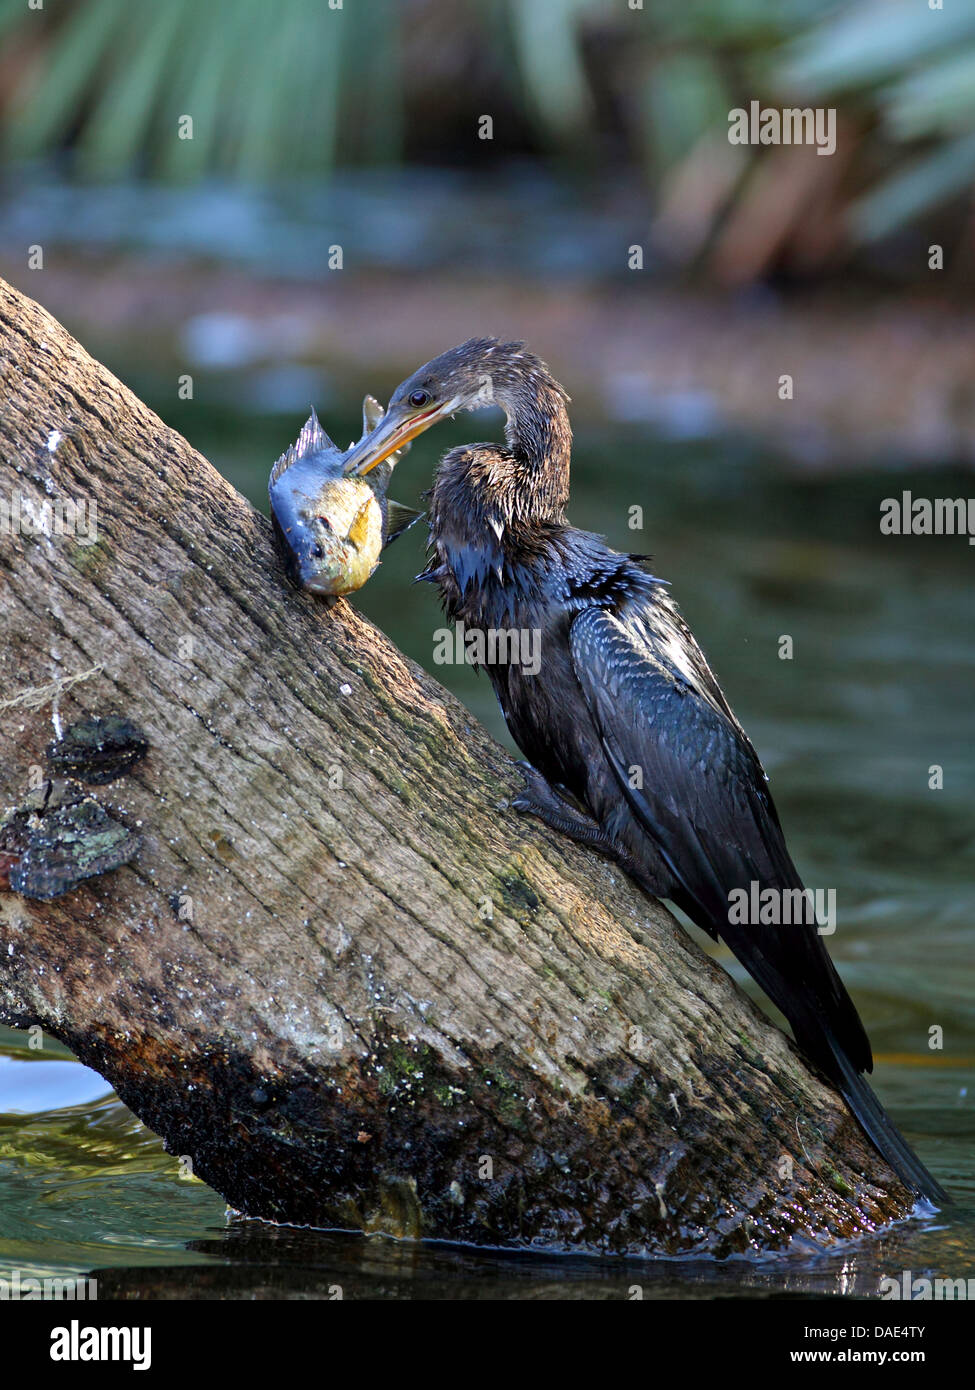 American darter (Anhinga anhinga), feeding an fish, USA, Florida Stock Photo